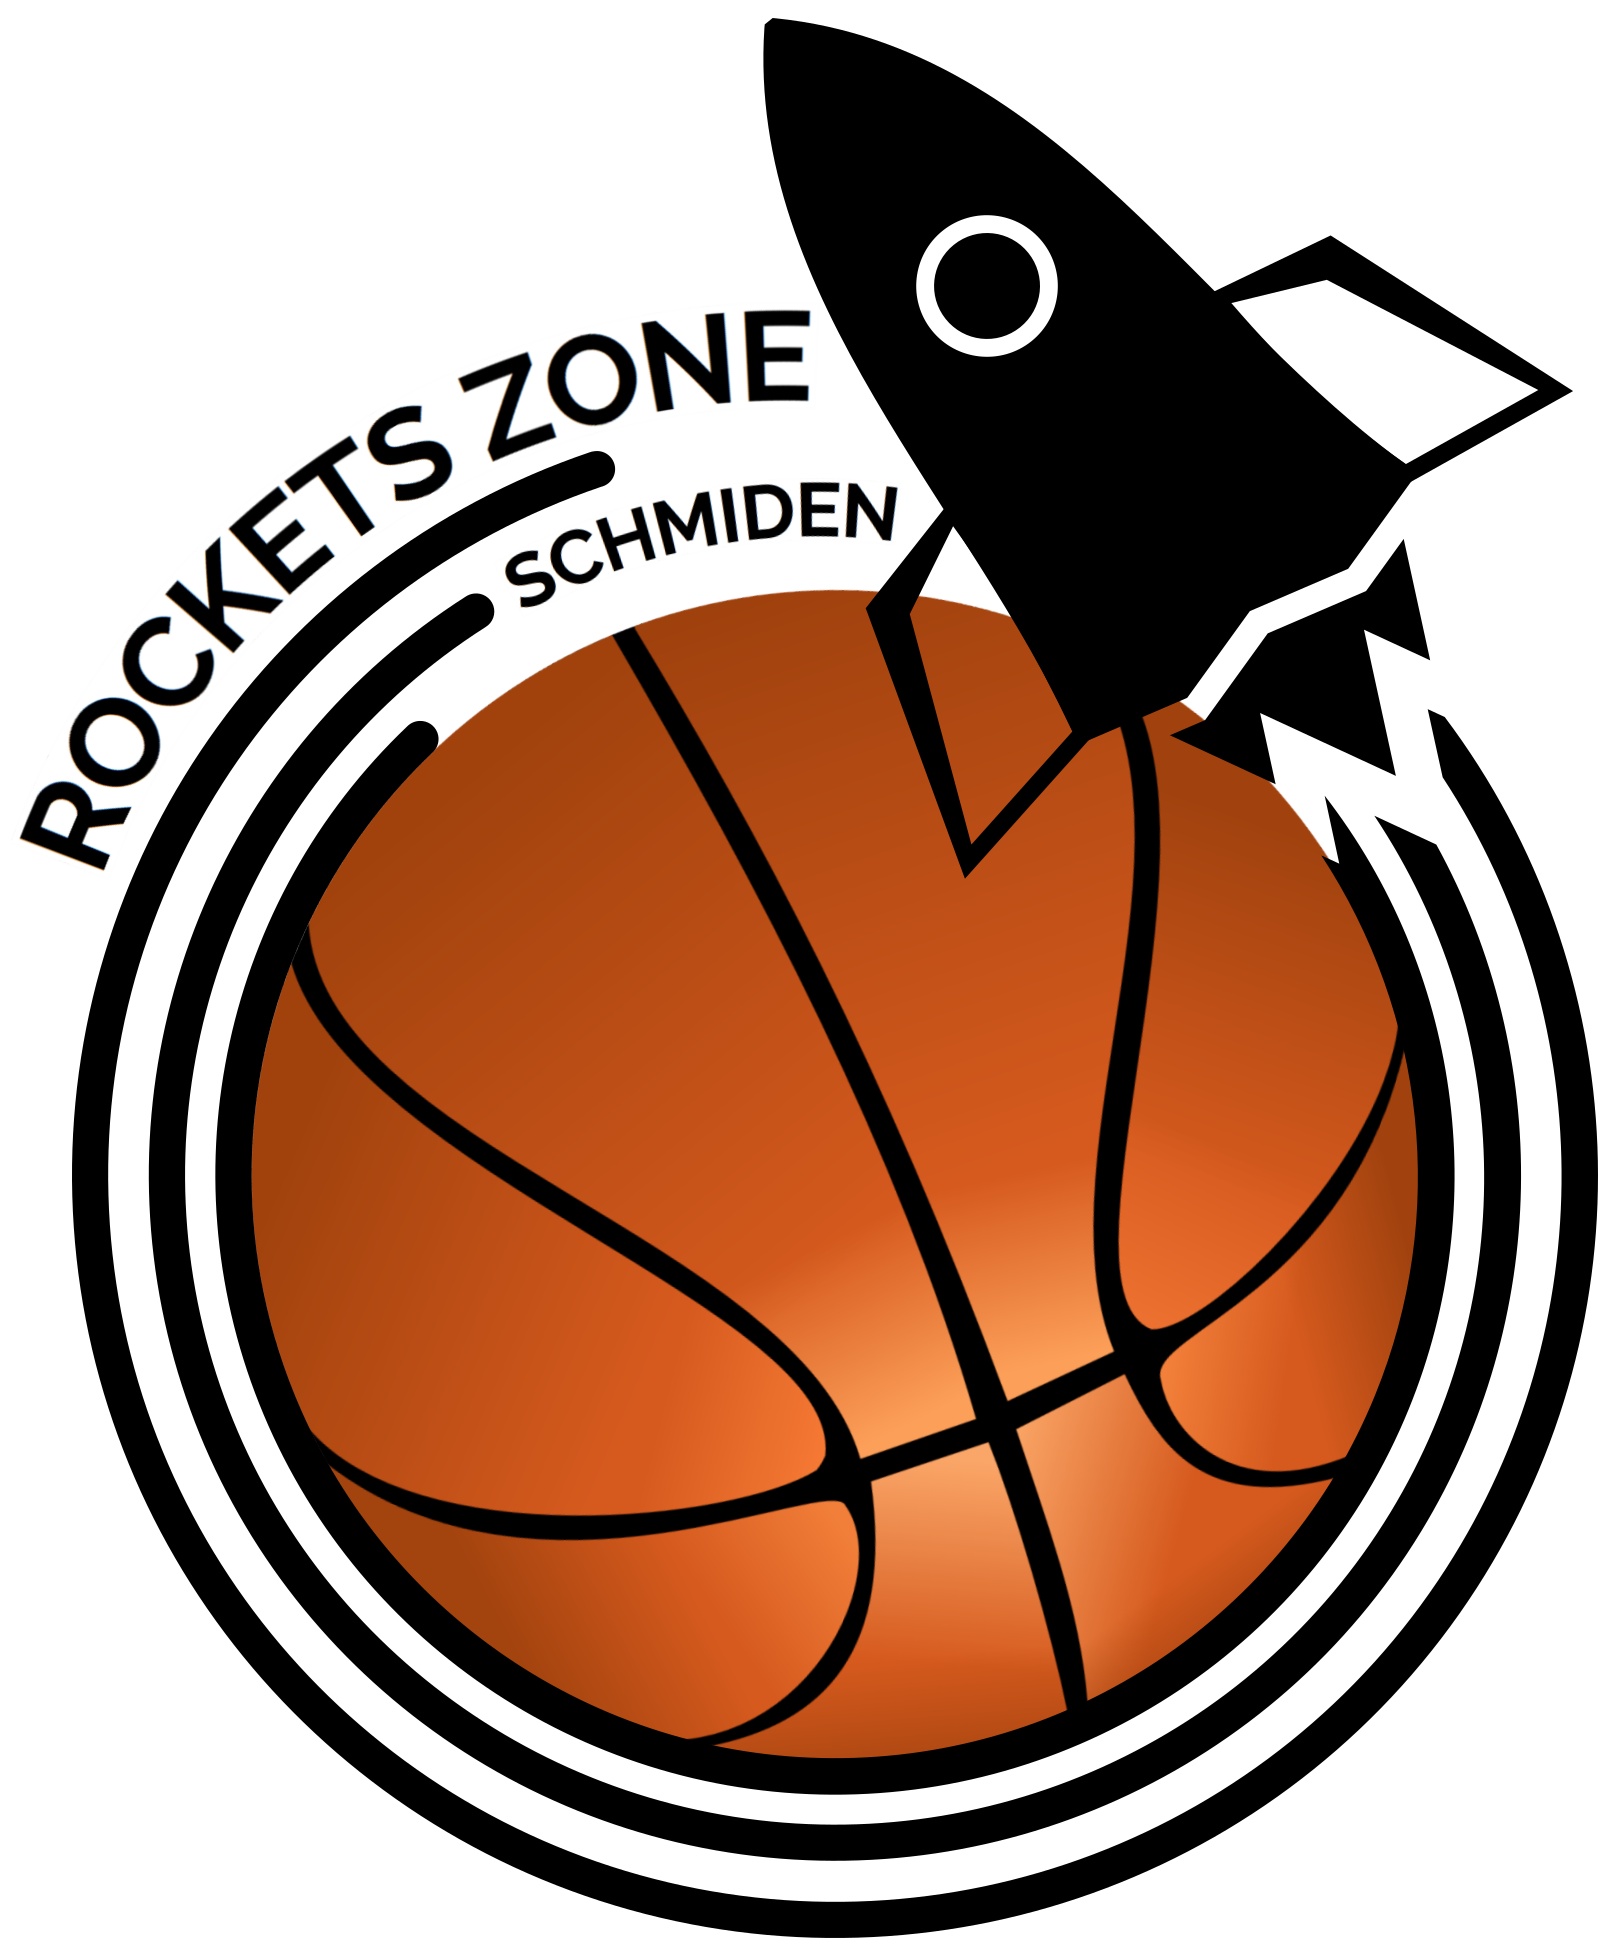 Rockets Zone